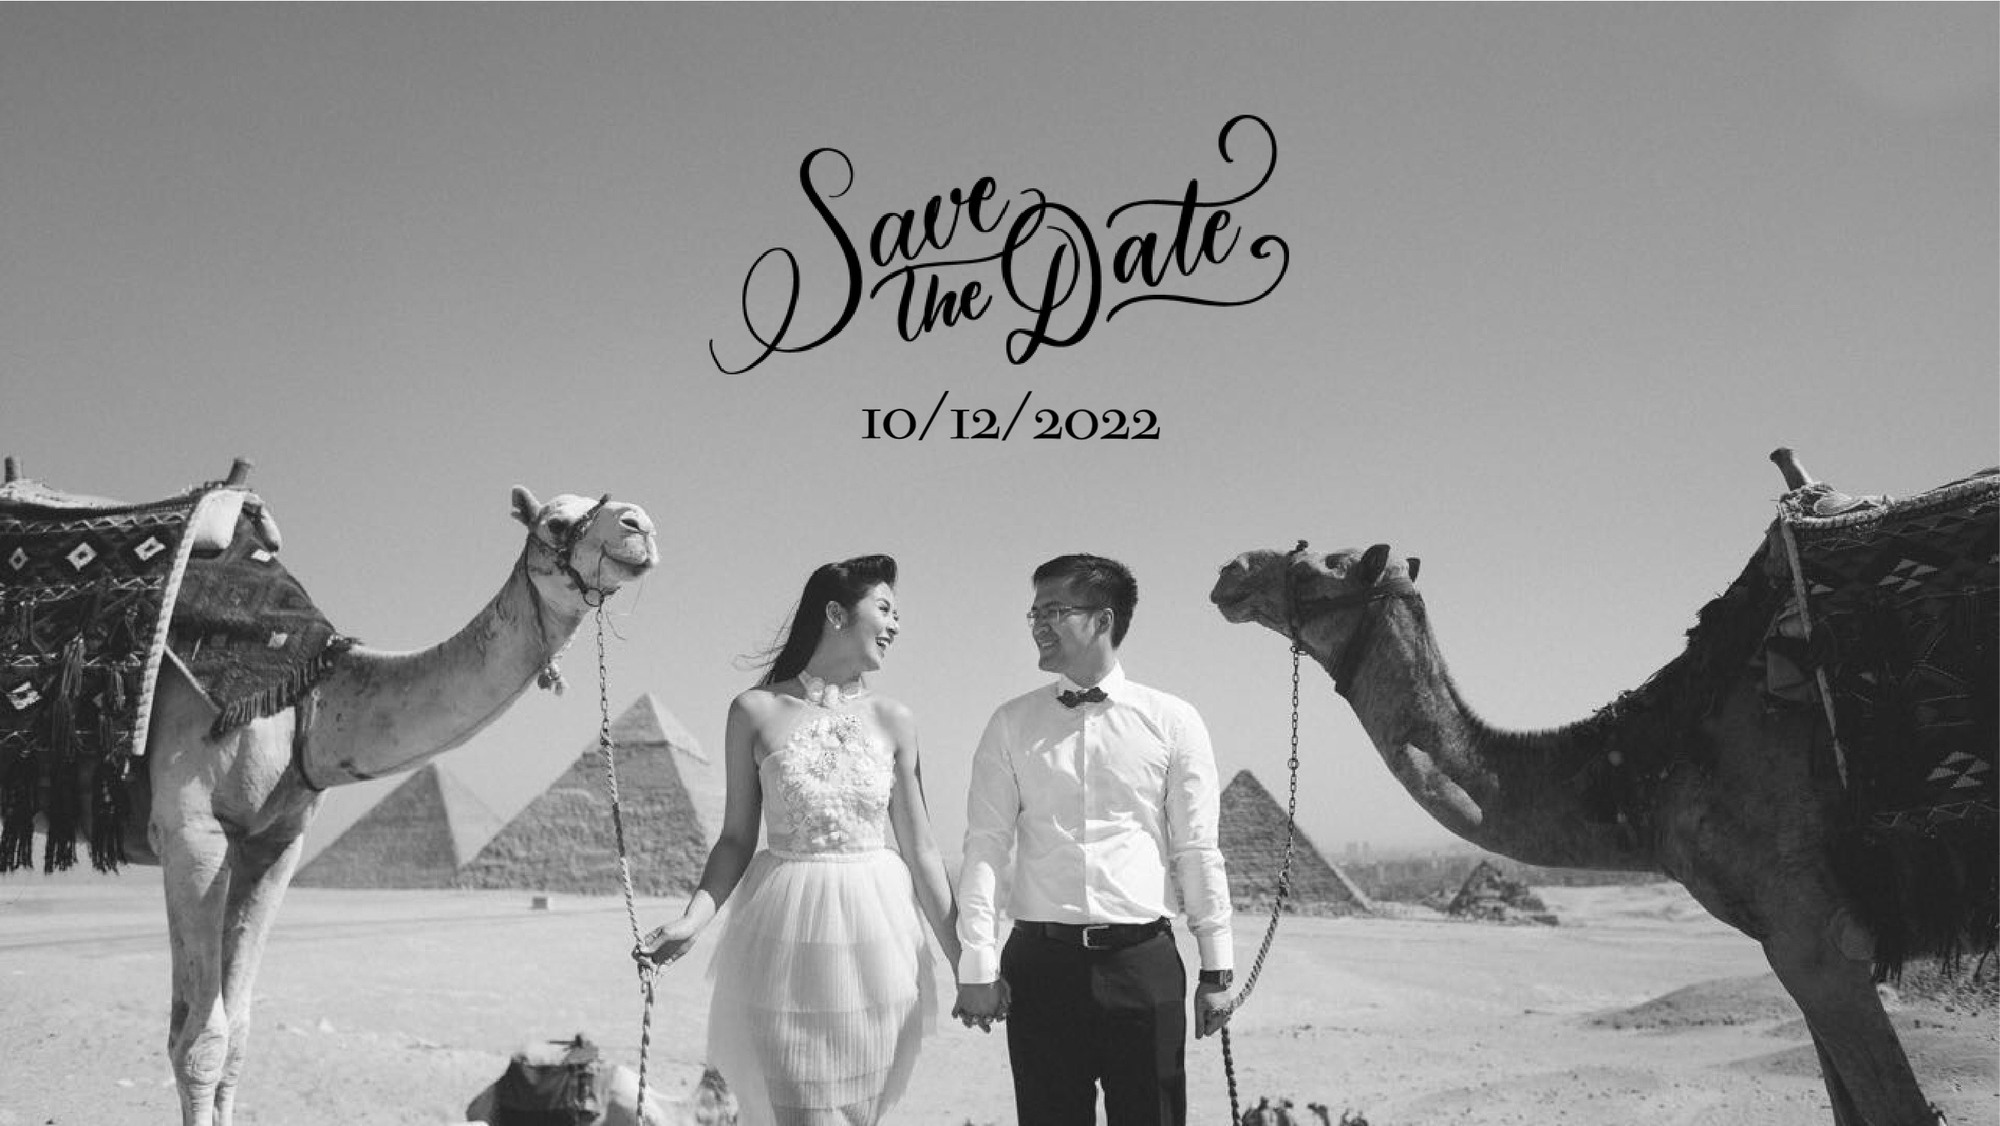 Hoa hậu Ngọc Hân lần đầu công bố ảnh cưới tại Ai Cập - Ảnh 1.